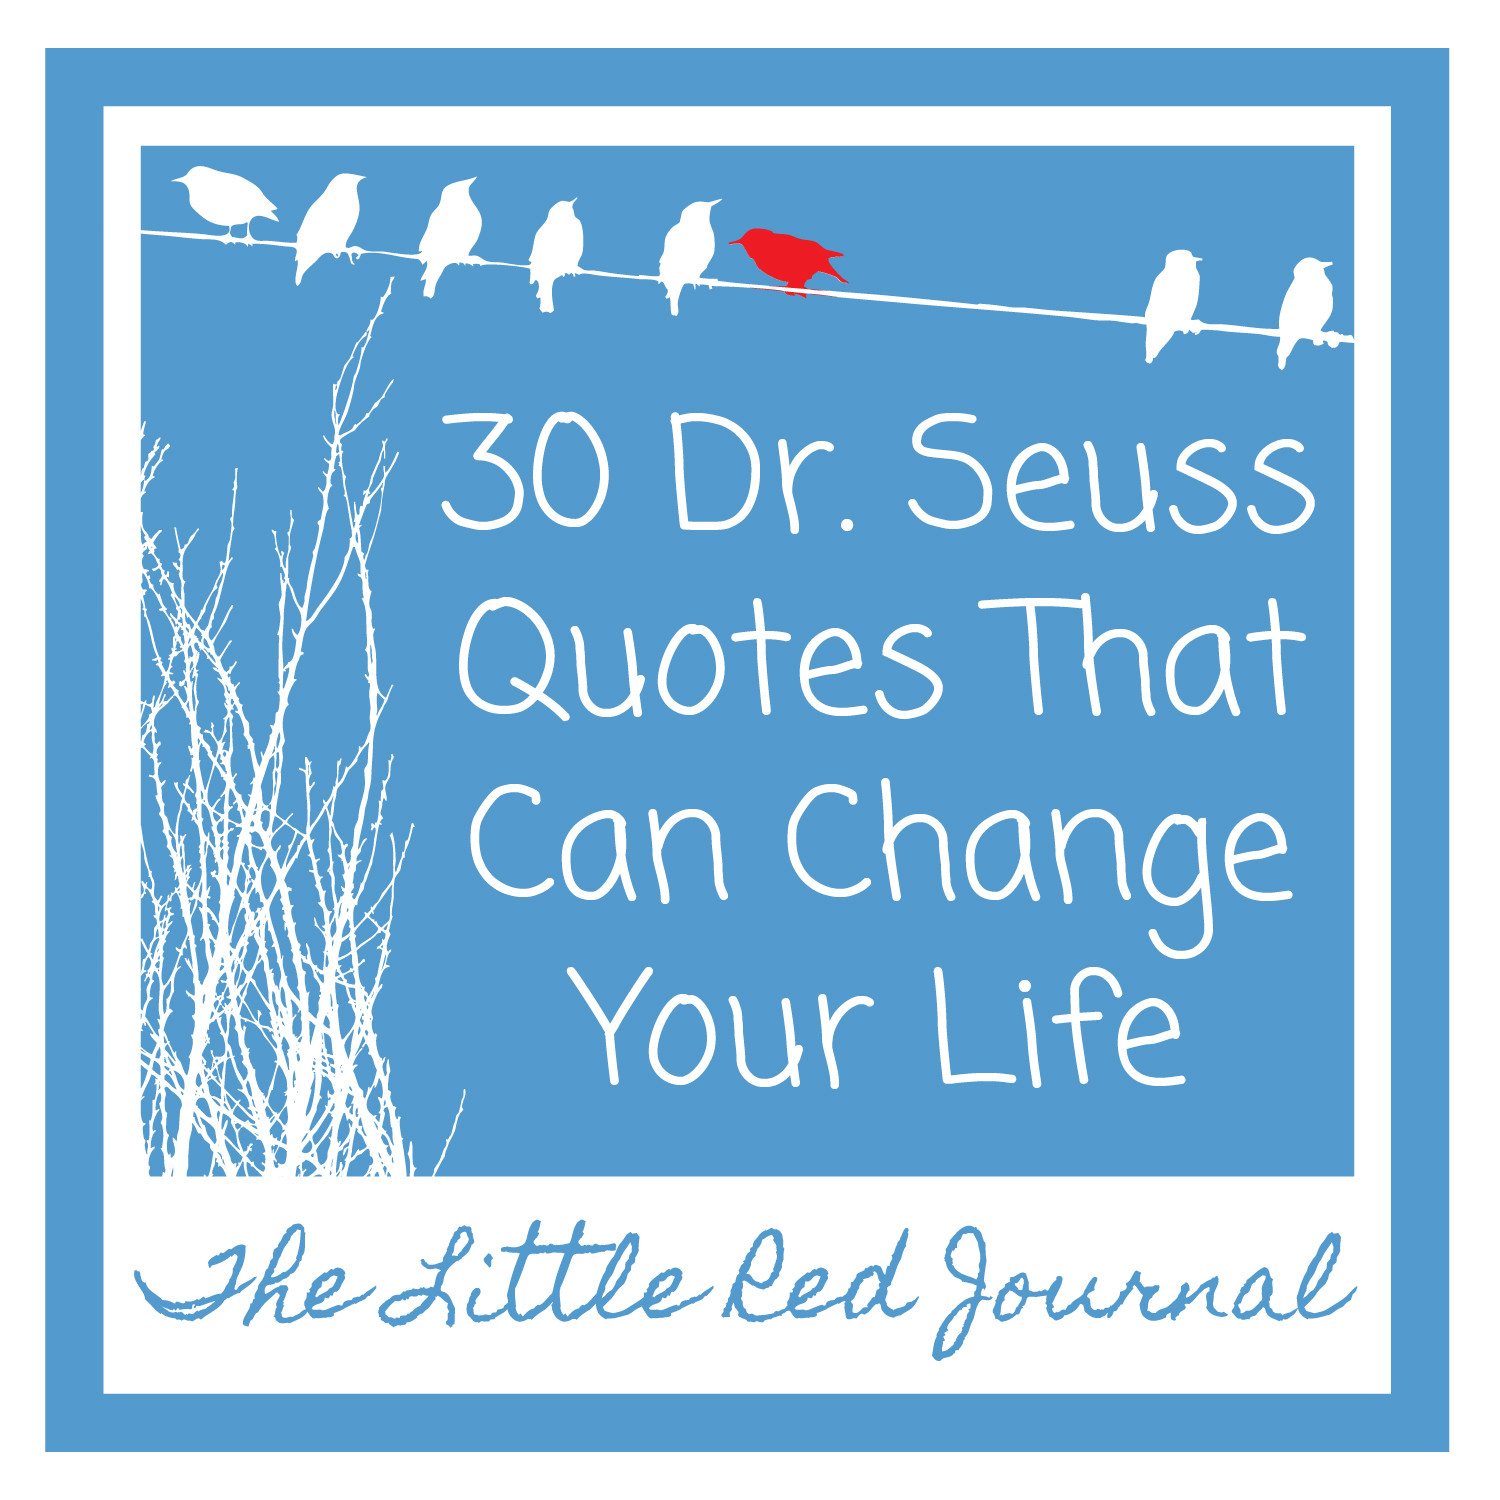 Dr.Seuss Quotes About Friendship
 Dr Seuss Quotes About Friendship QuotesGram